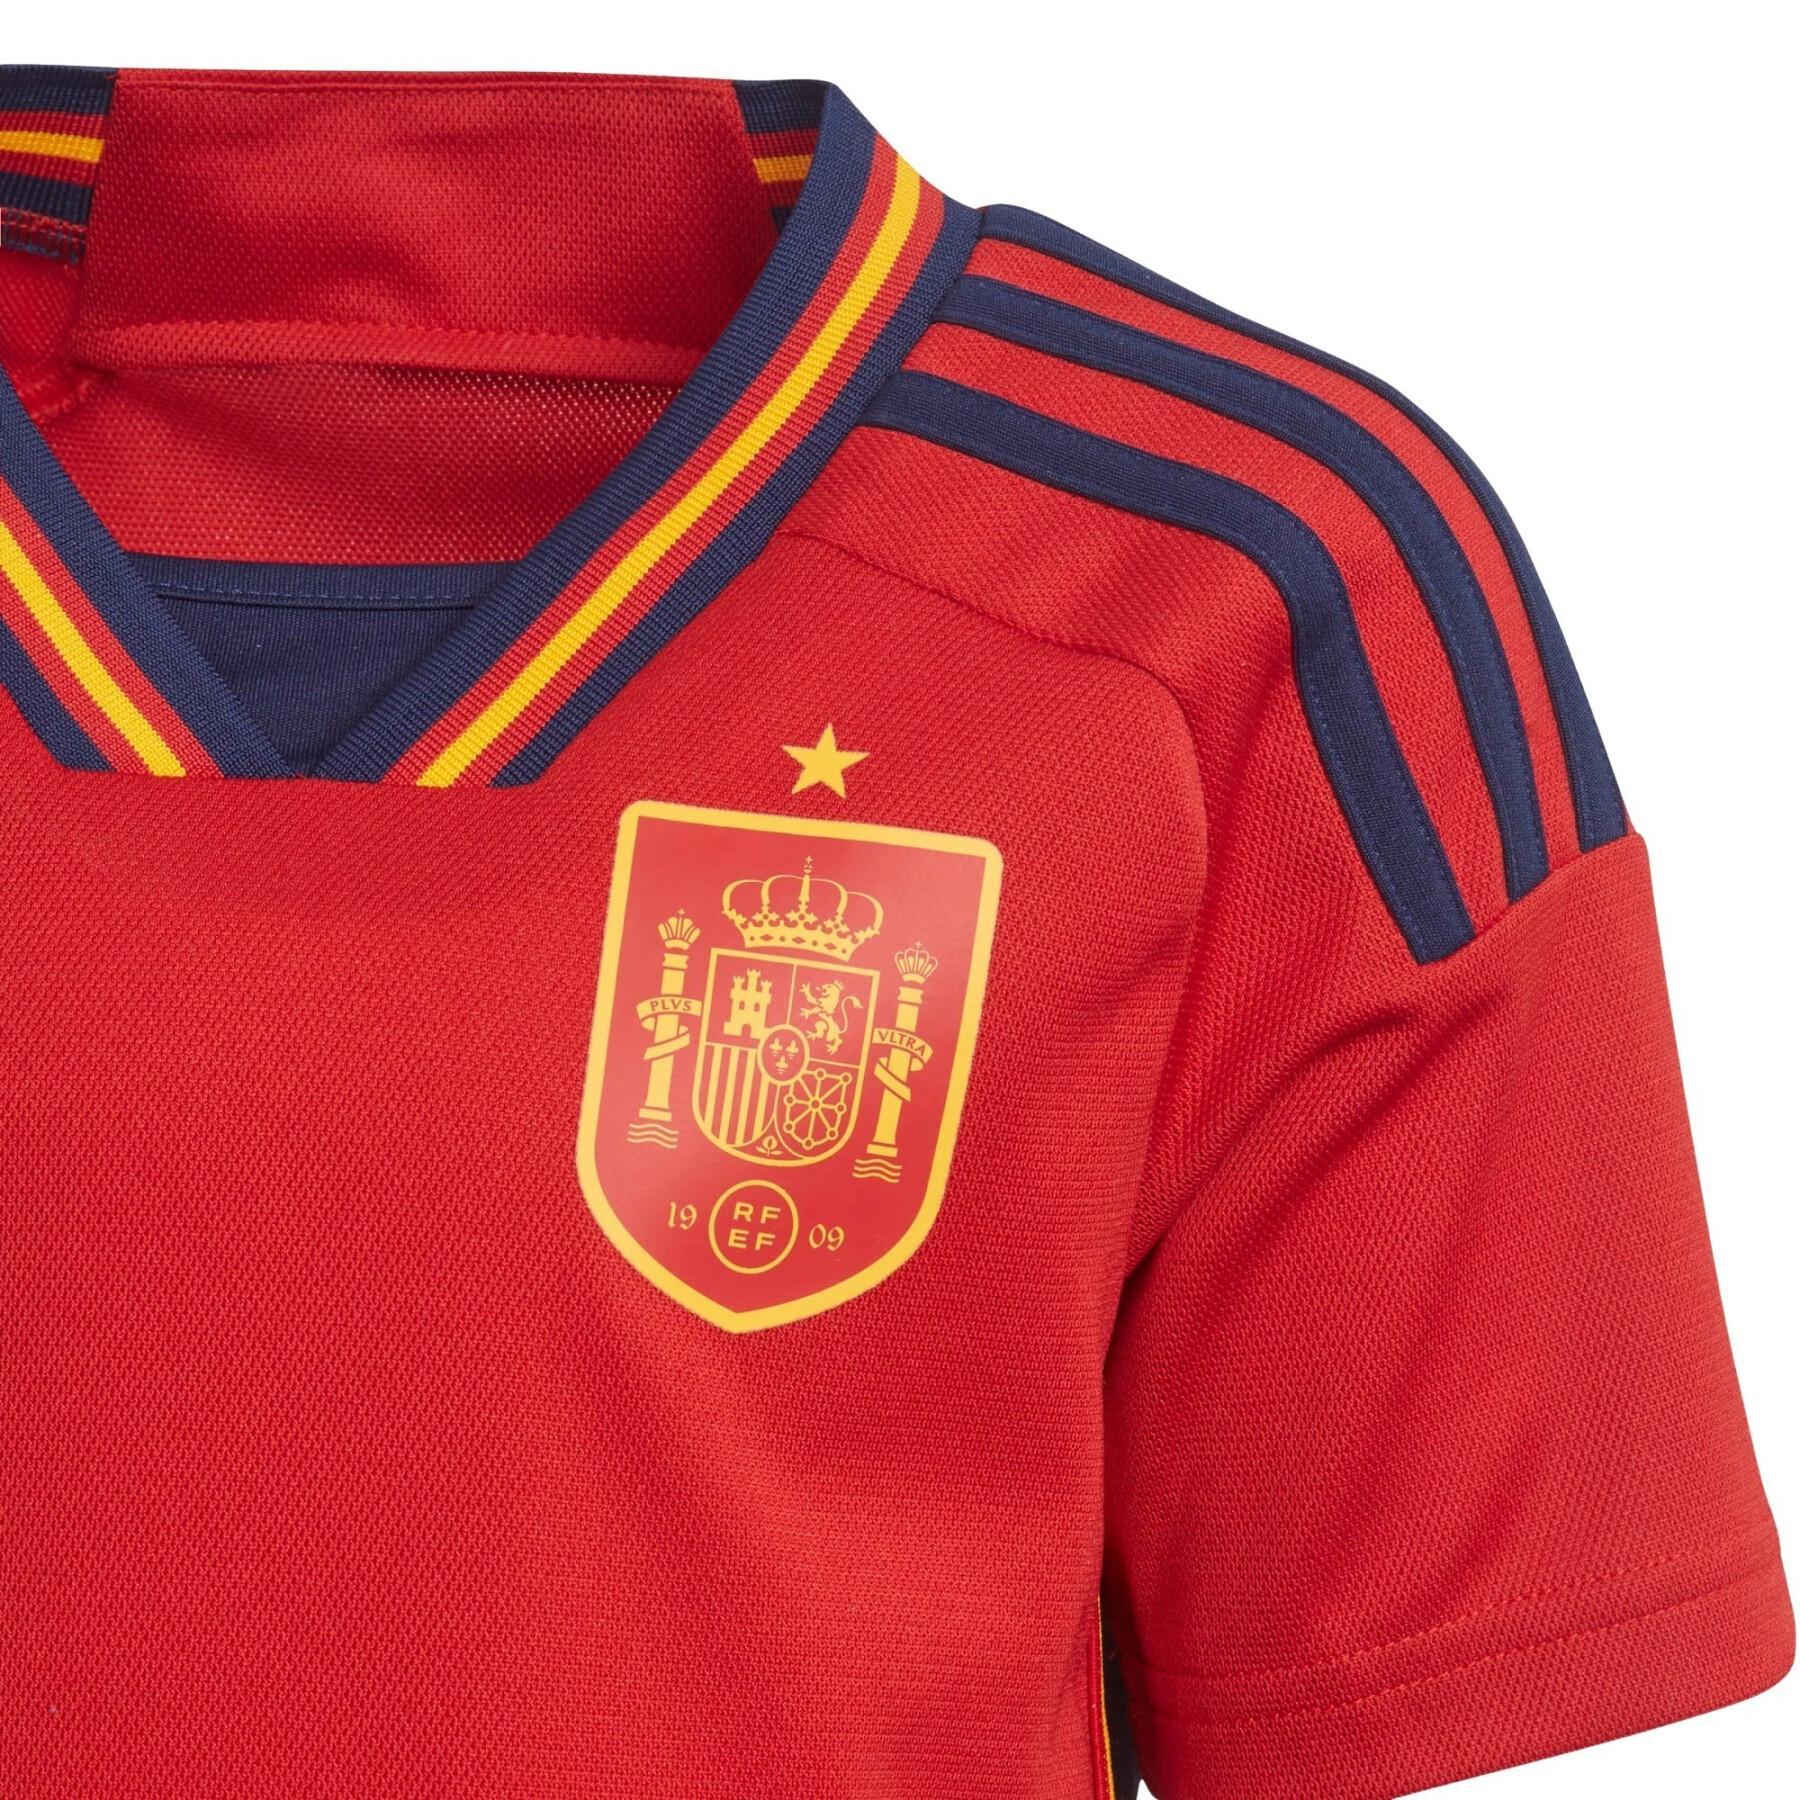 Set d'abbigliamento Home per bambini Coppa del Mondo 2022 Spagna